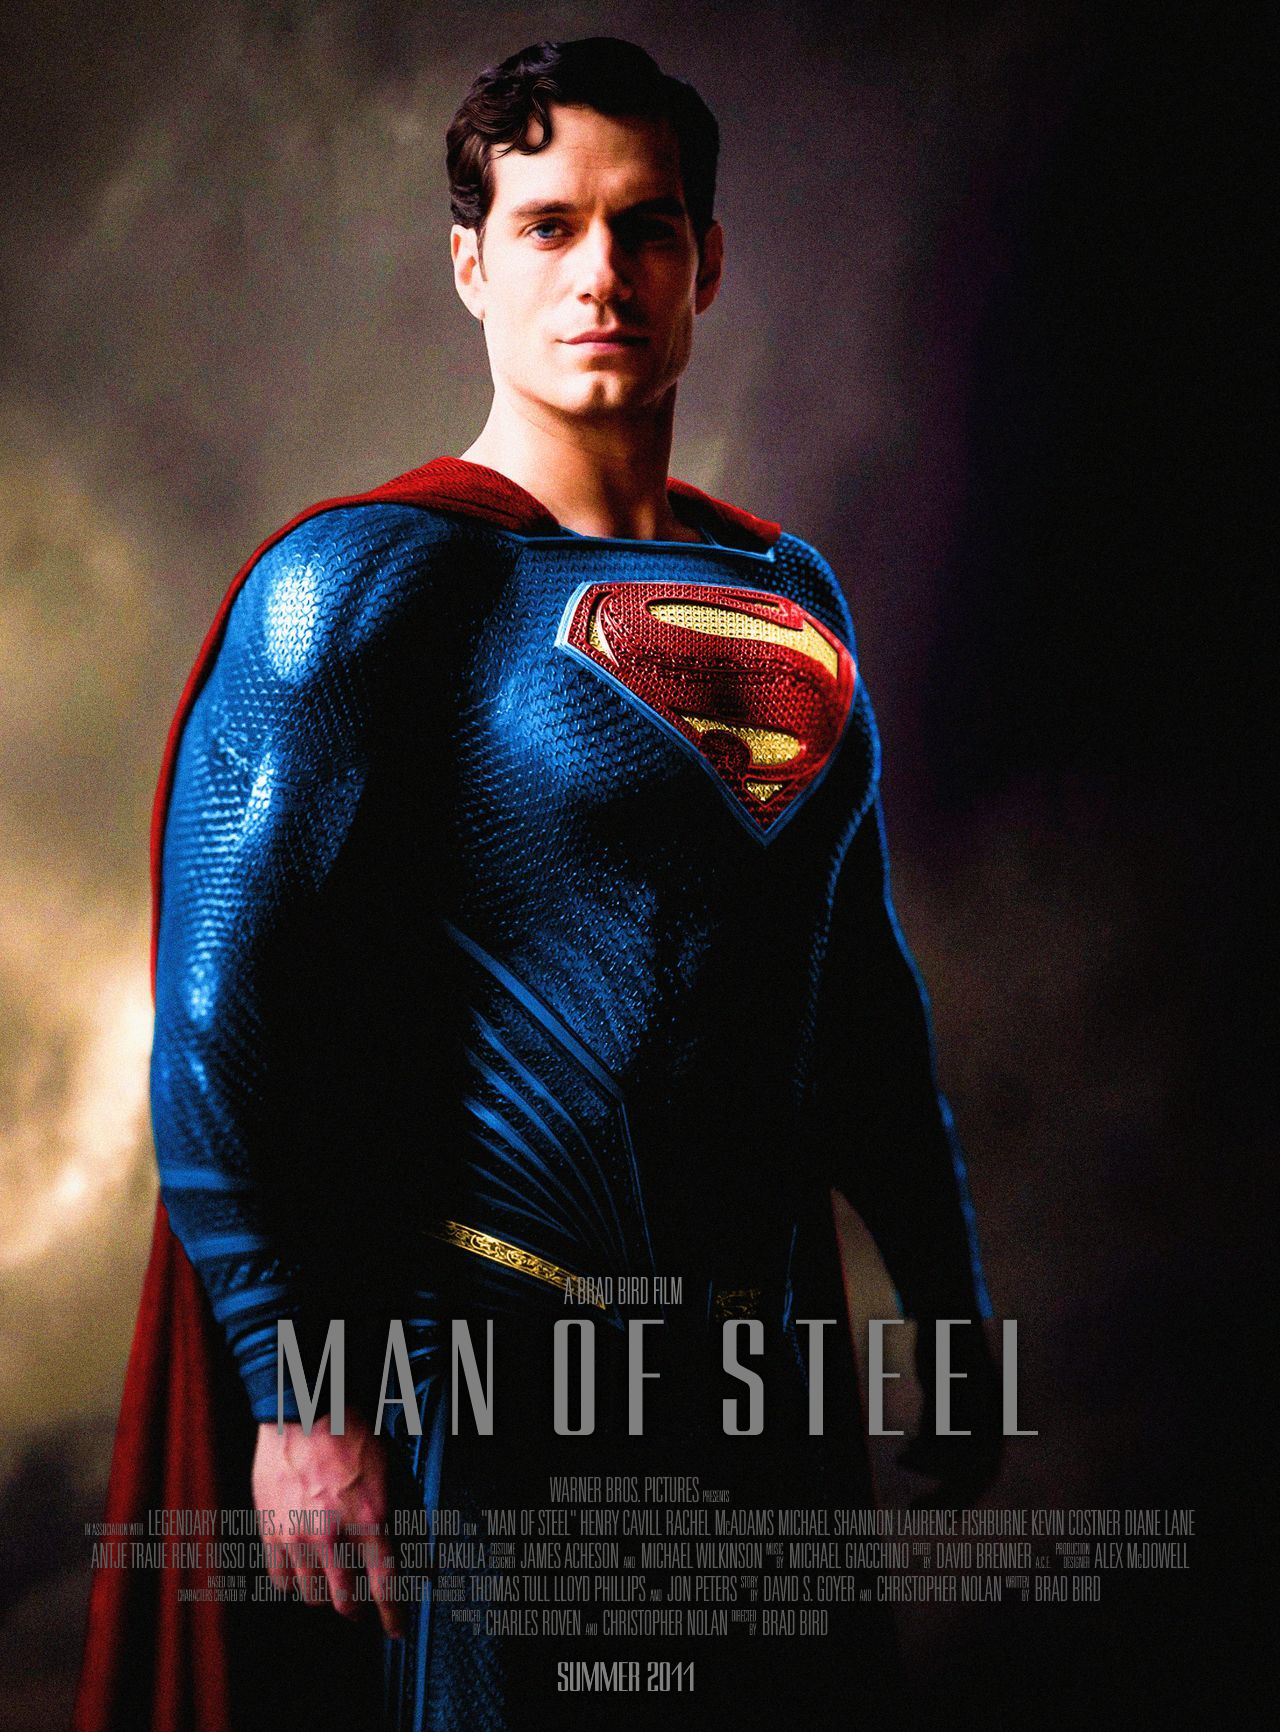 Man of Steel (film) - Wikipedia